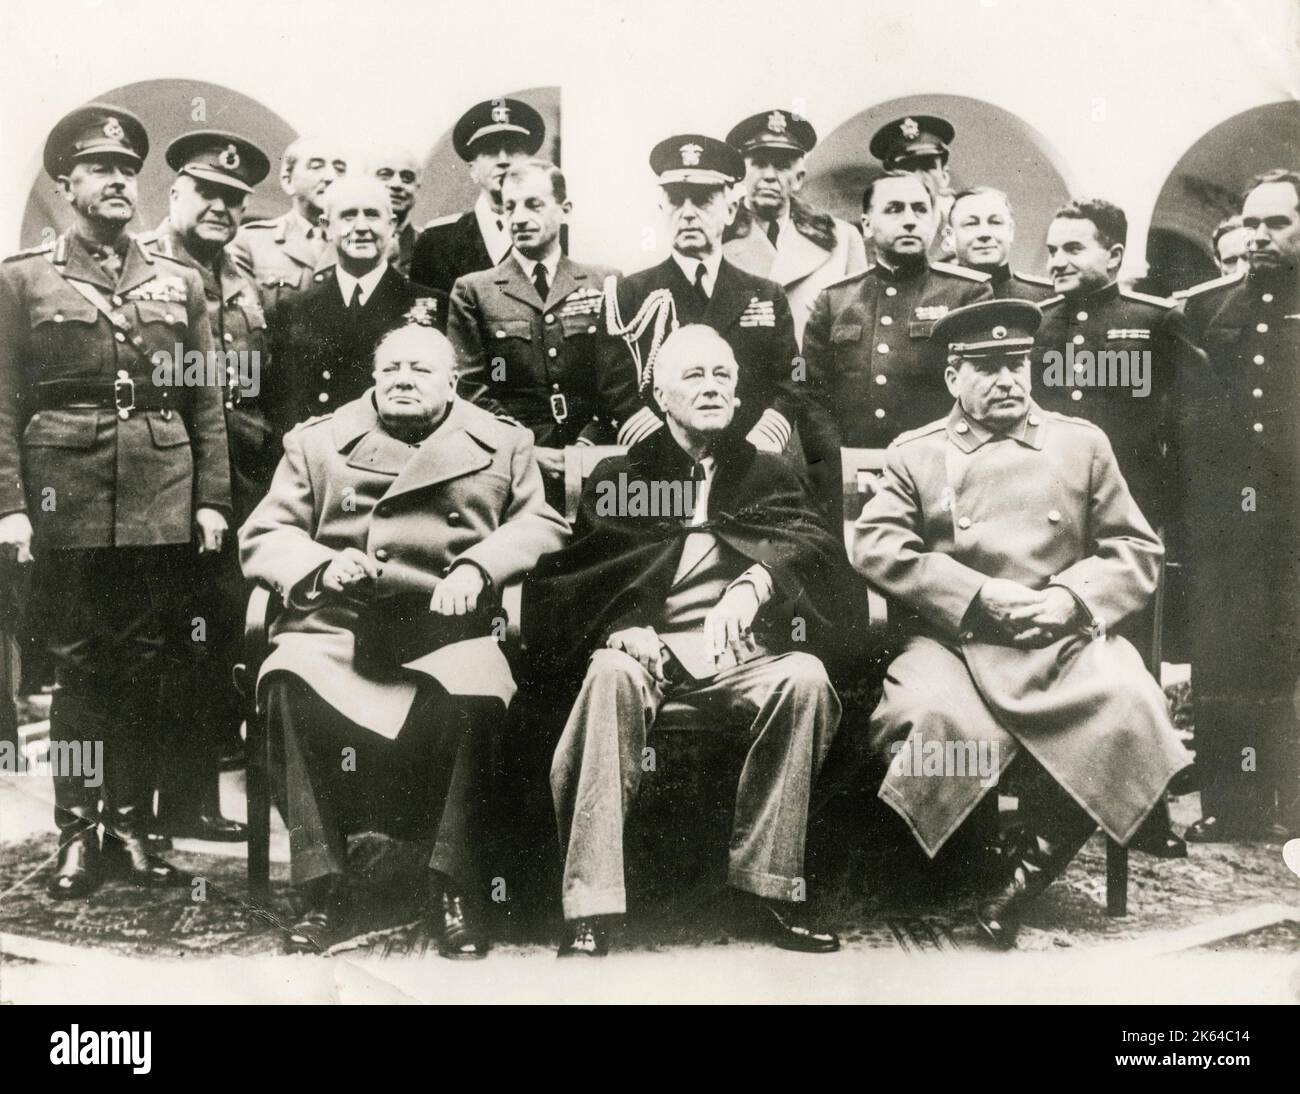 Photographie vintage de la Seconde Guerre mondiale : la Conférence de Yalta, également connue sous le nom de Conférence de Crimée et nommée Argonaut, qui s'est tenue du 4 au 11 février 1945, était la réunion des chefs de gouvernement des États-Unis, du Royaume-Uni et de l'Union soviétique pendant la Seconde Guerre mondiale pour discuter de la réorganisation de l'Allemagne et de l'Europe. Les trois États étaient représentés respectivement par le président Franklin D. Roosevelt, le premier ministre Winston Churchill et le premier ministre Joseph Staline. La conférence a eu lieu près de Yalta en Crimée, en Union soviétique, dans les palais de Livadia, Yousoupov et Vorontsov. Banque D'Images